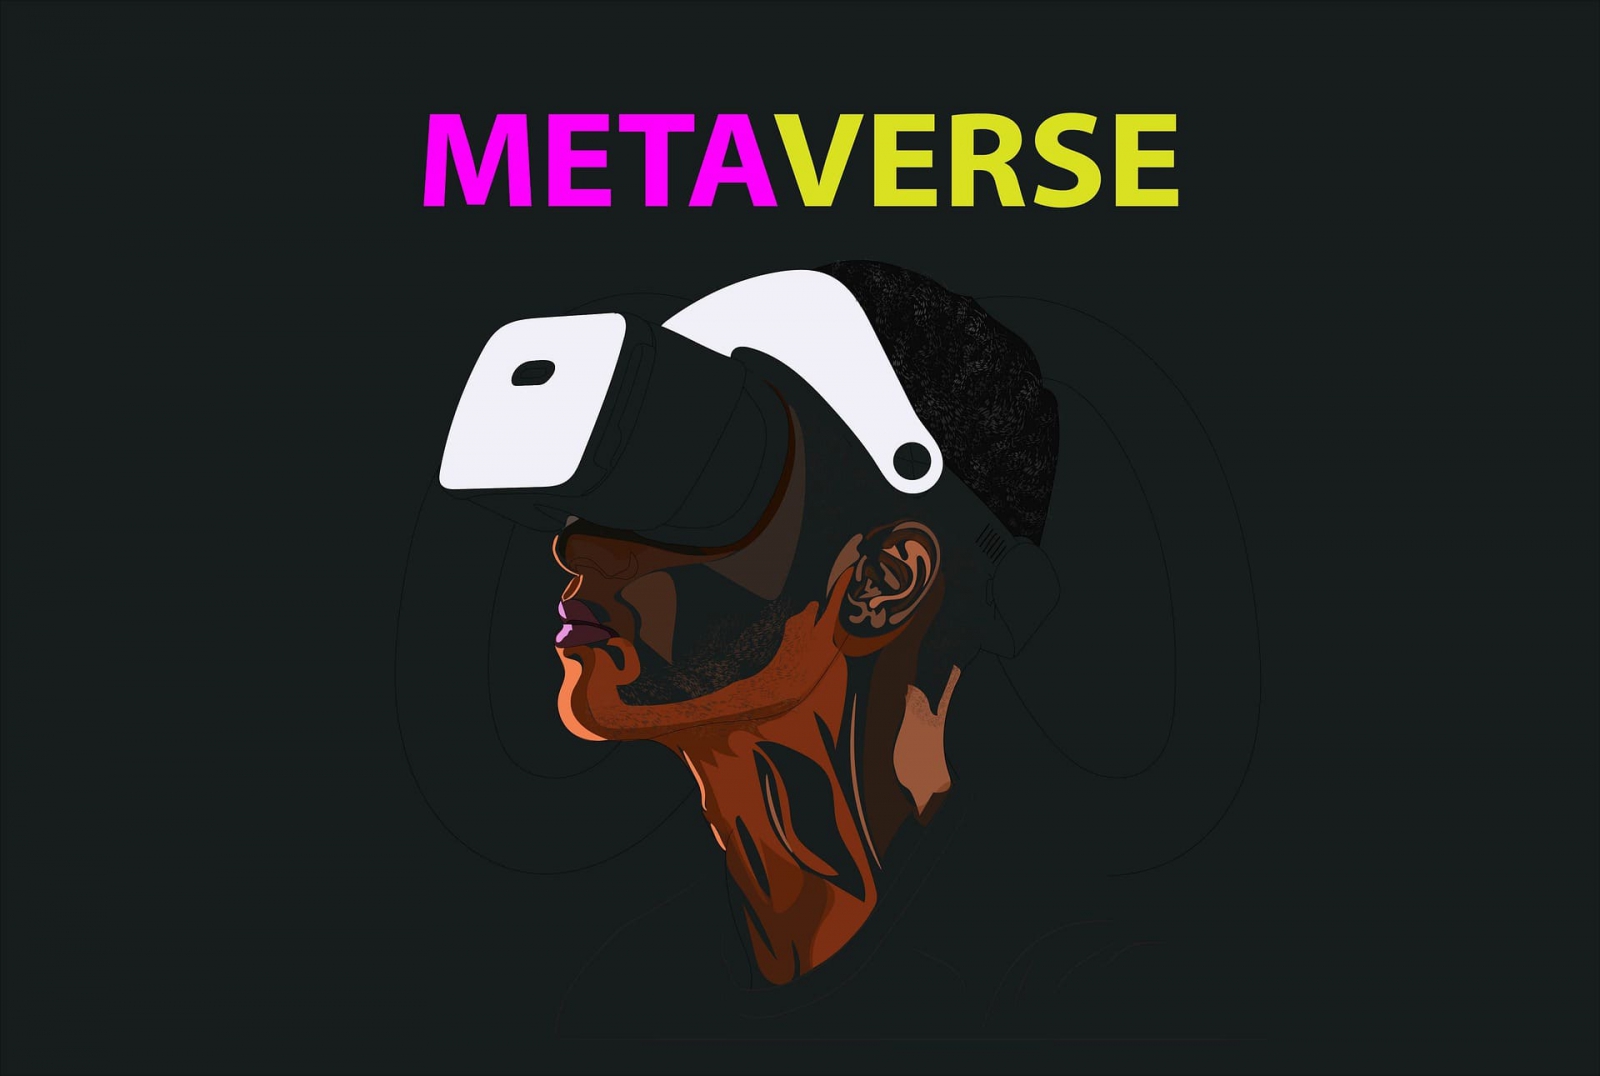 Metaverse Là Gì? Những Điều Cần Biết Về Vũ Trụ Ảo